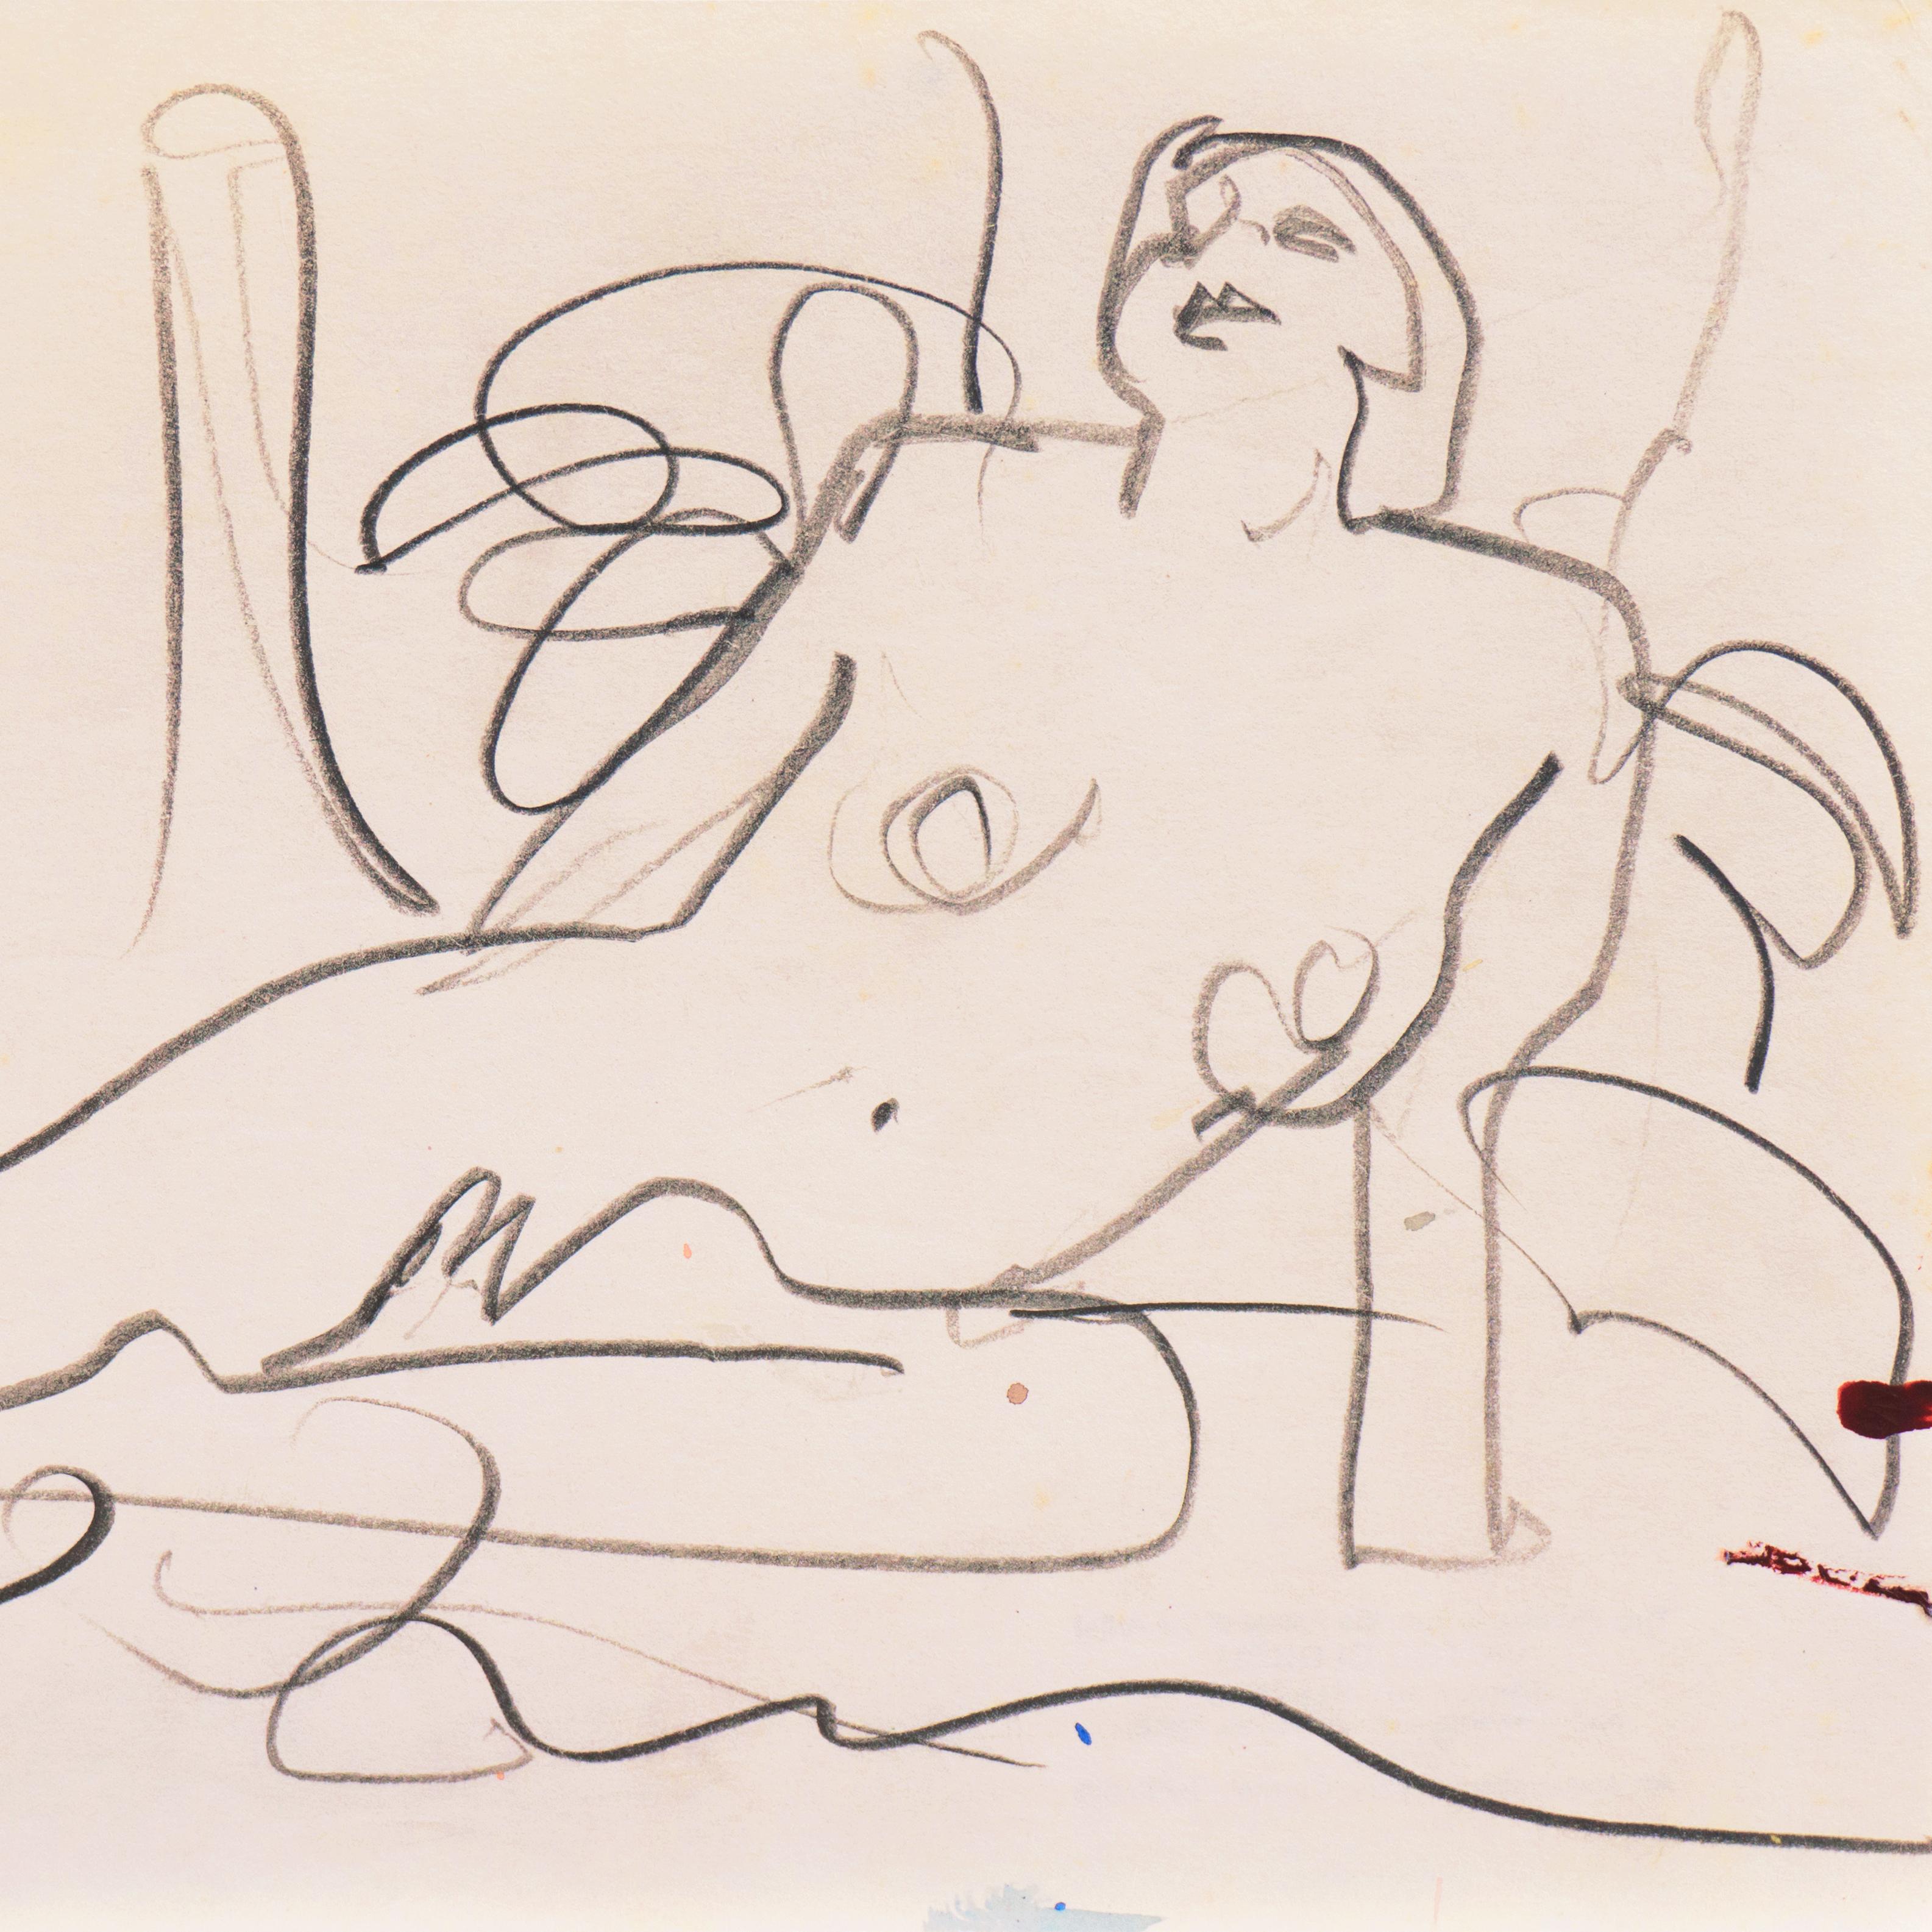 Di Gesu Estate Stempel verso für Victor di Gesu (Amerikaner, 1914-1988) und geschaffen ca. 1955.

Eine elegante, freihändige Skizze einer jungen Frau mit Bobschnitt, die nackt und mit zurückgeworfenem Kopf auf einer Decke liegend dargestellt ist.